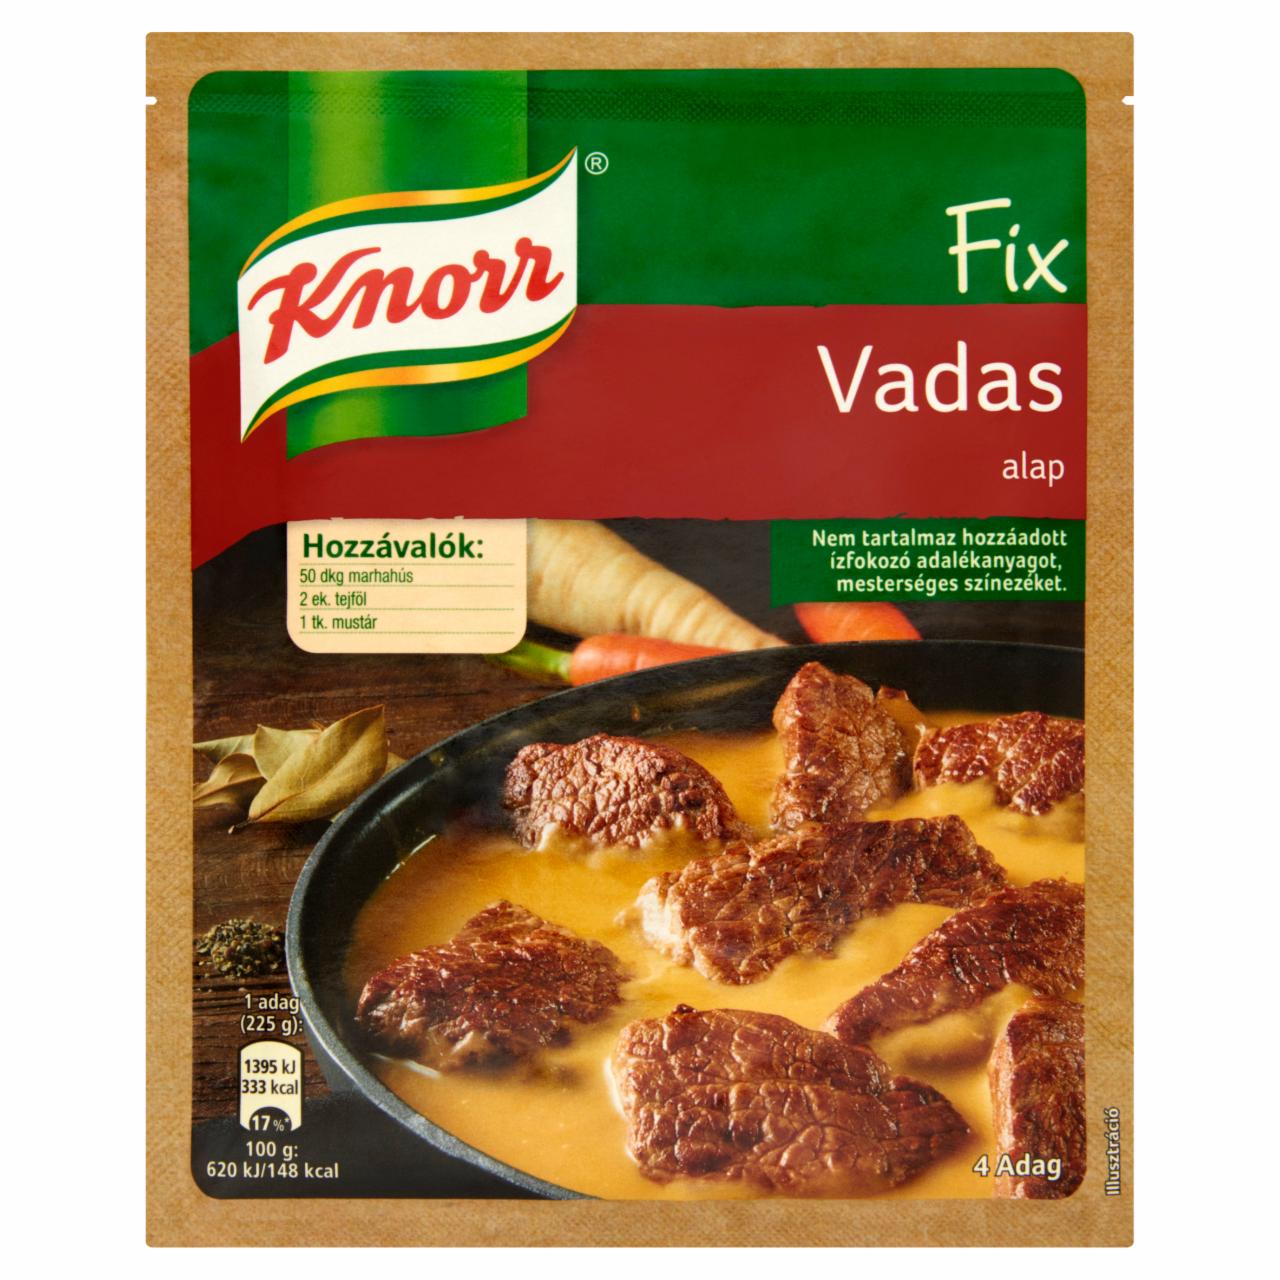 Képek - Knorr Fix vadas alap 60 g